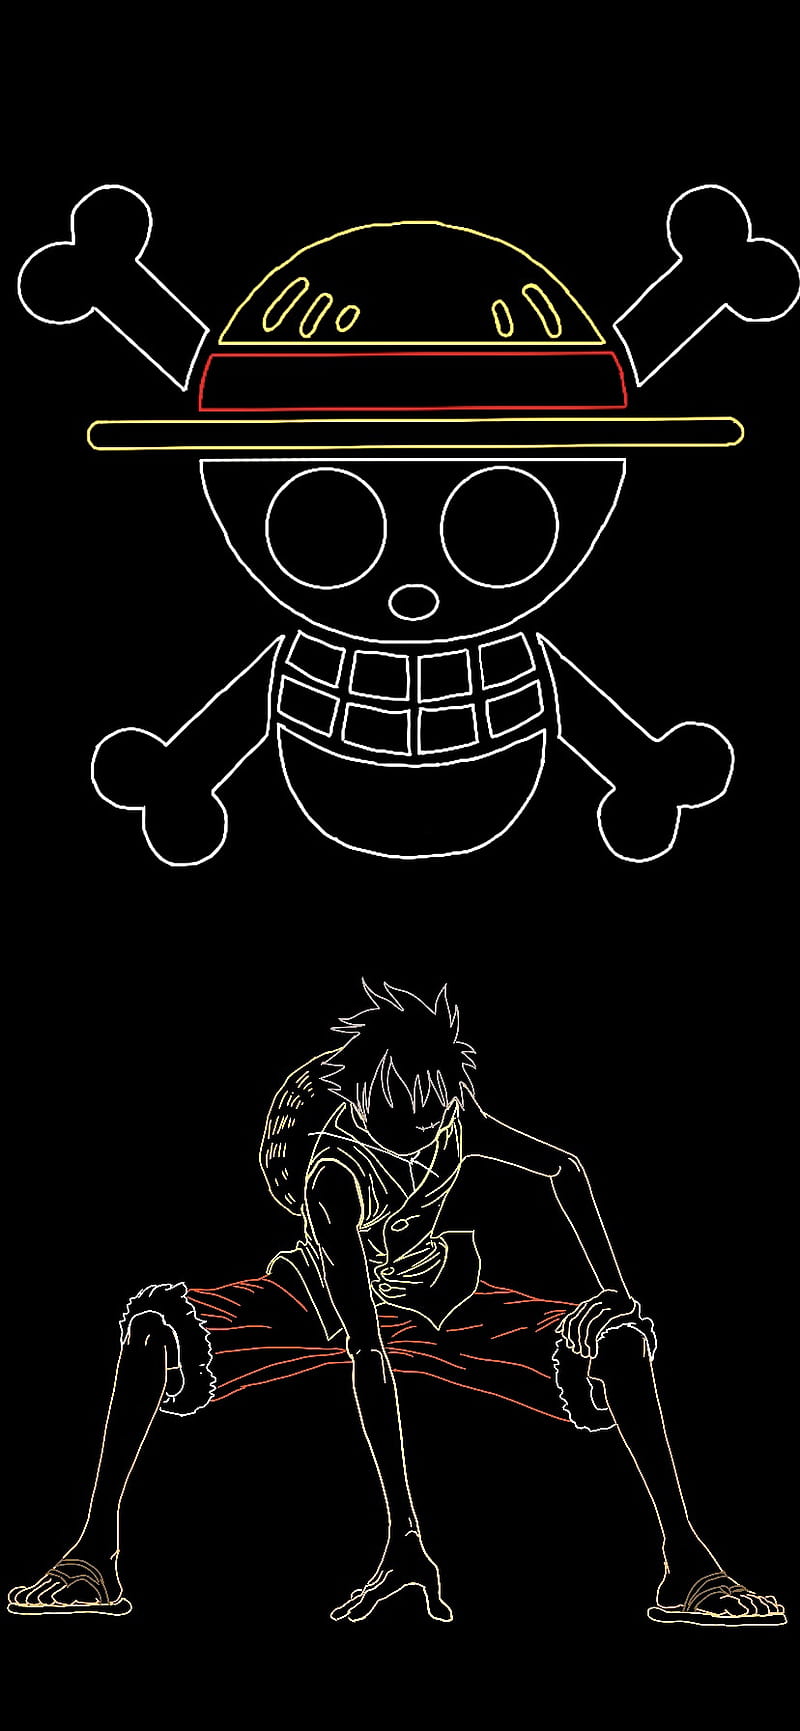 Hãy cùng chúng tôi khám phá khả năng vô địch của Luffy khi anh chàng kích hoạt chế độ Monkey D. Luffy Second Gear trong bộ truyện One Piece. Những cảnh hành động, những đường nét tuyệt mỹ, đặc biệt còn có những chi tiết tinh tế với bộ trang phục bắt mắt của Luffy.